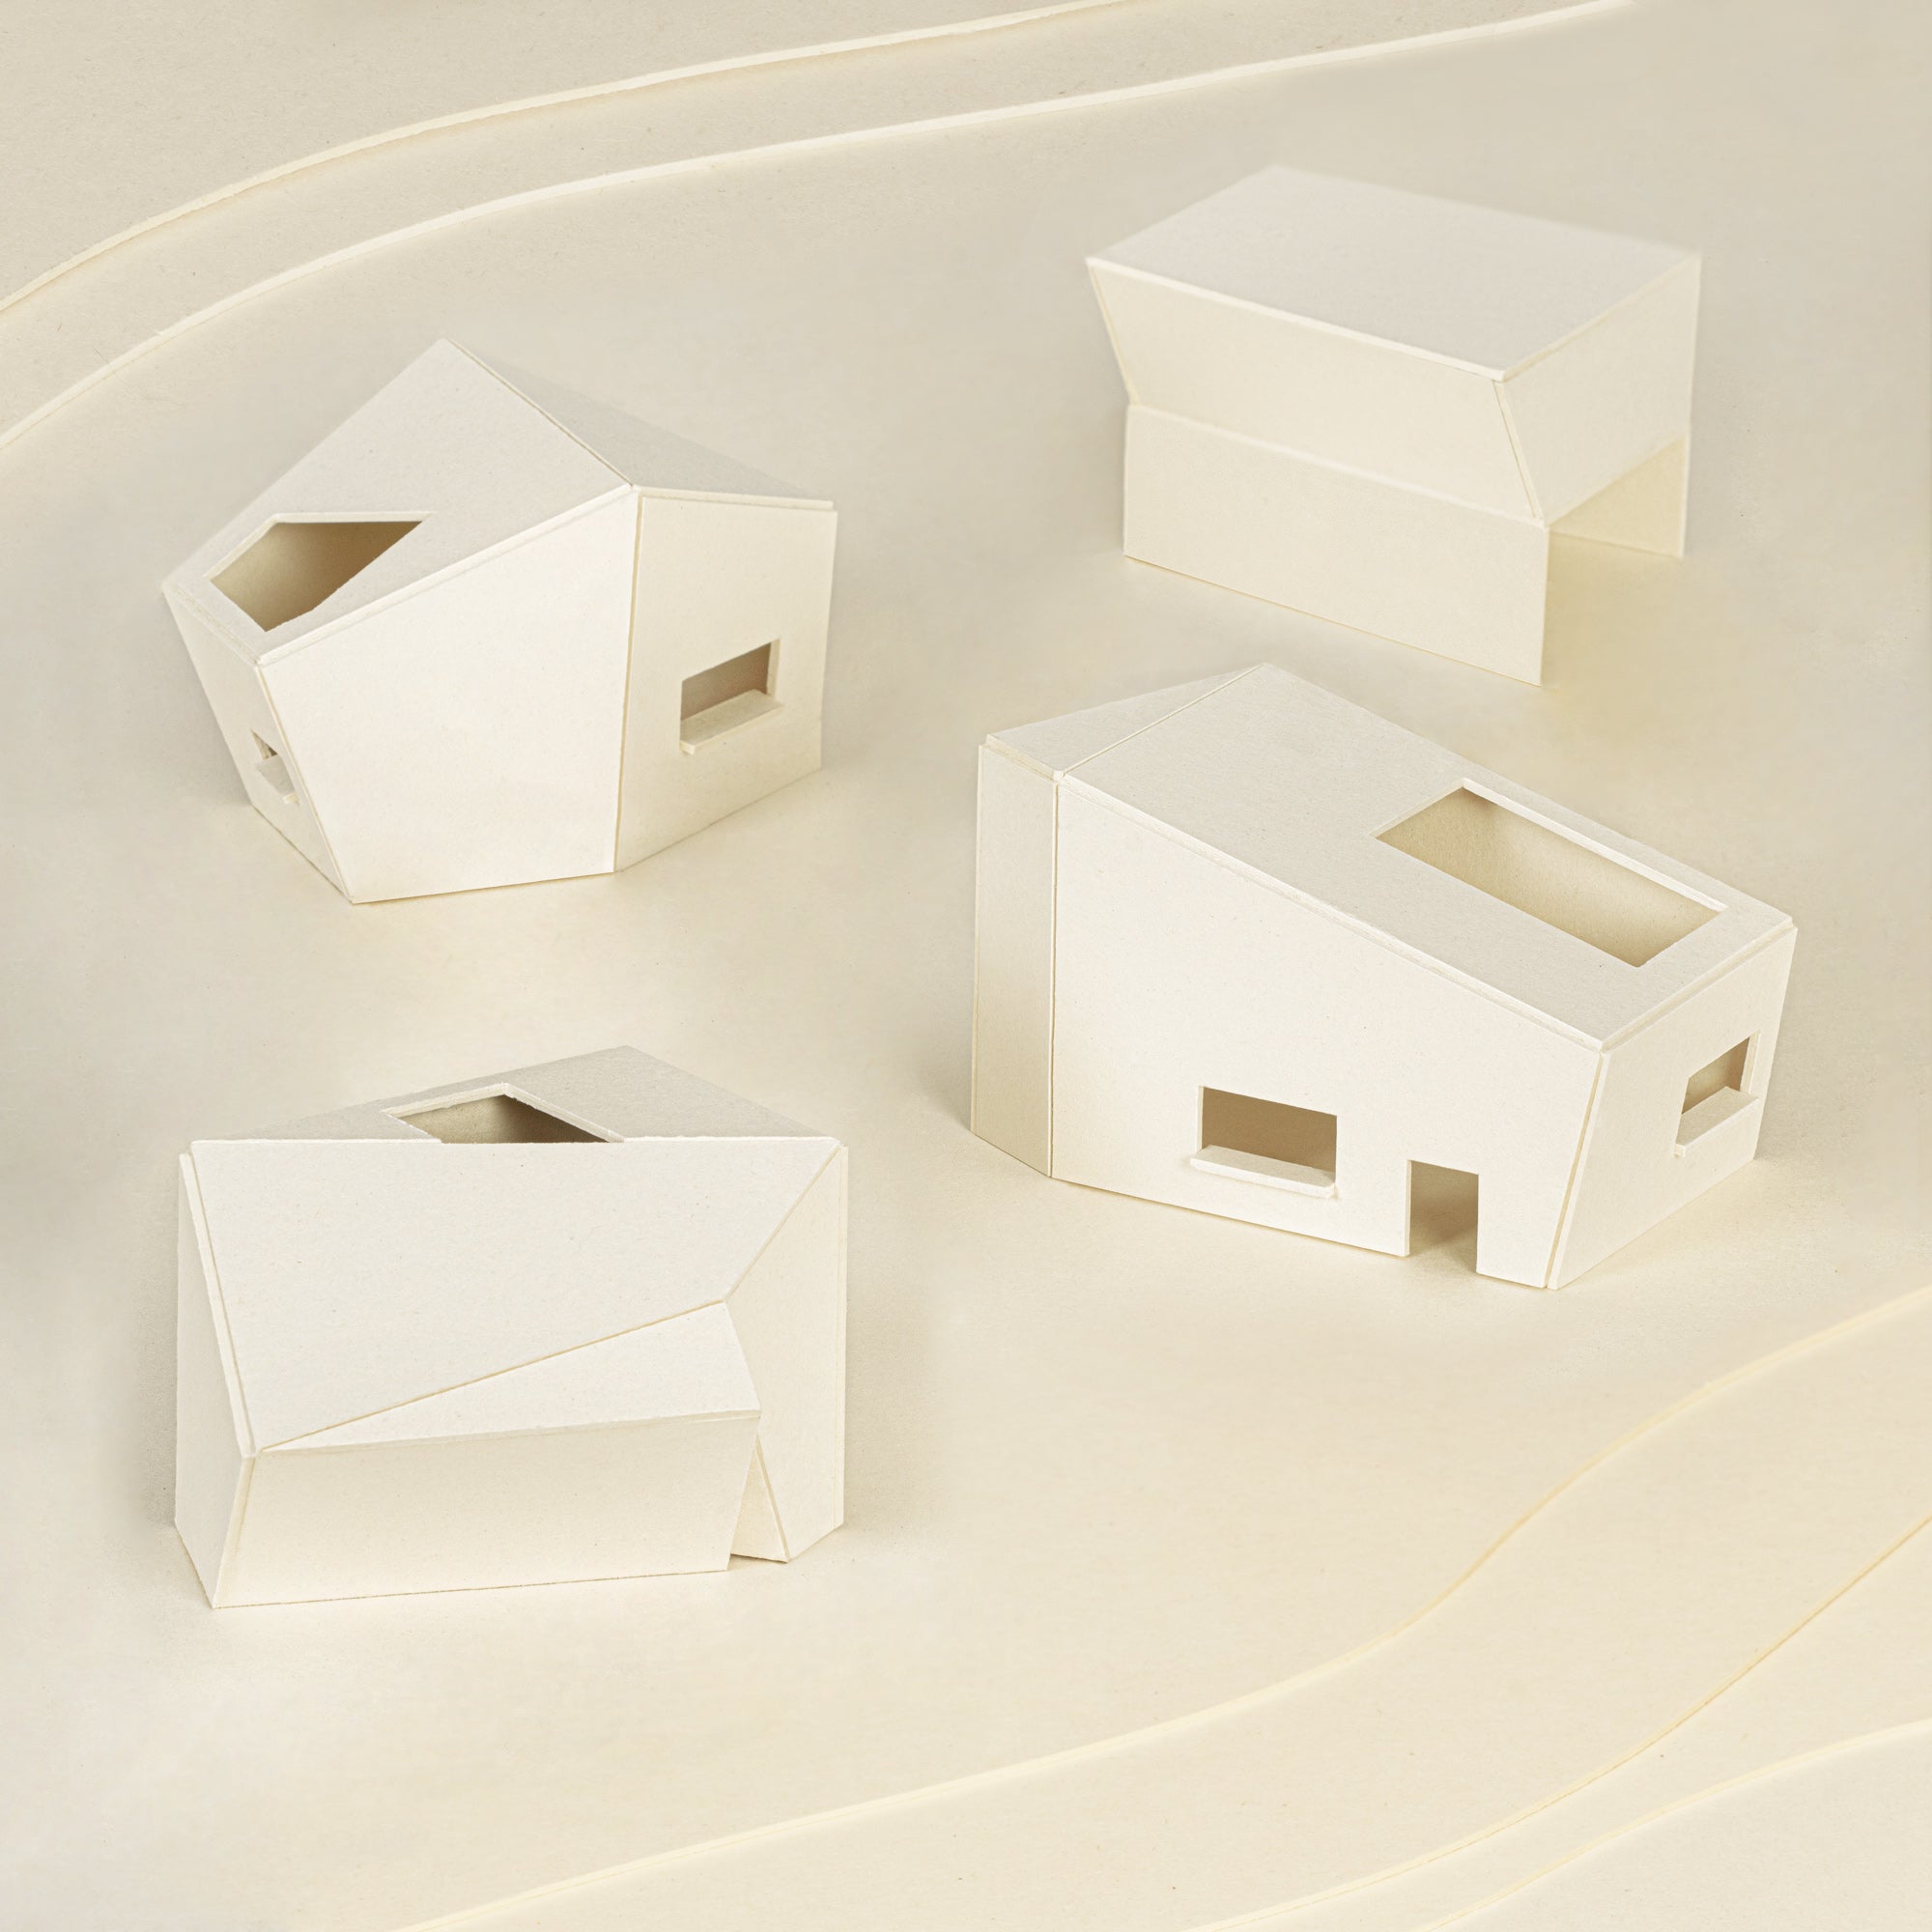 Modellbau & Architektur - Finnpappe ist vielfältig einsetzbar